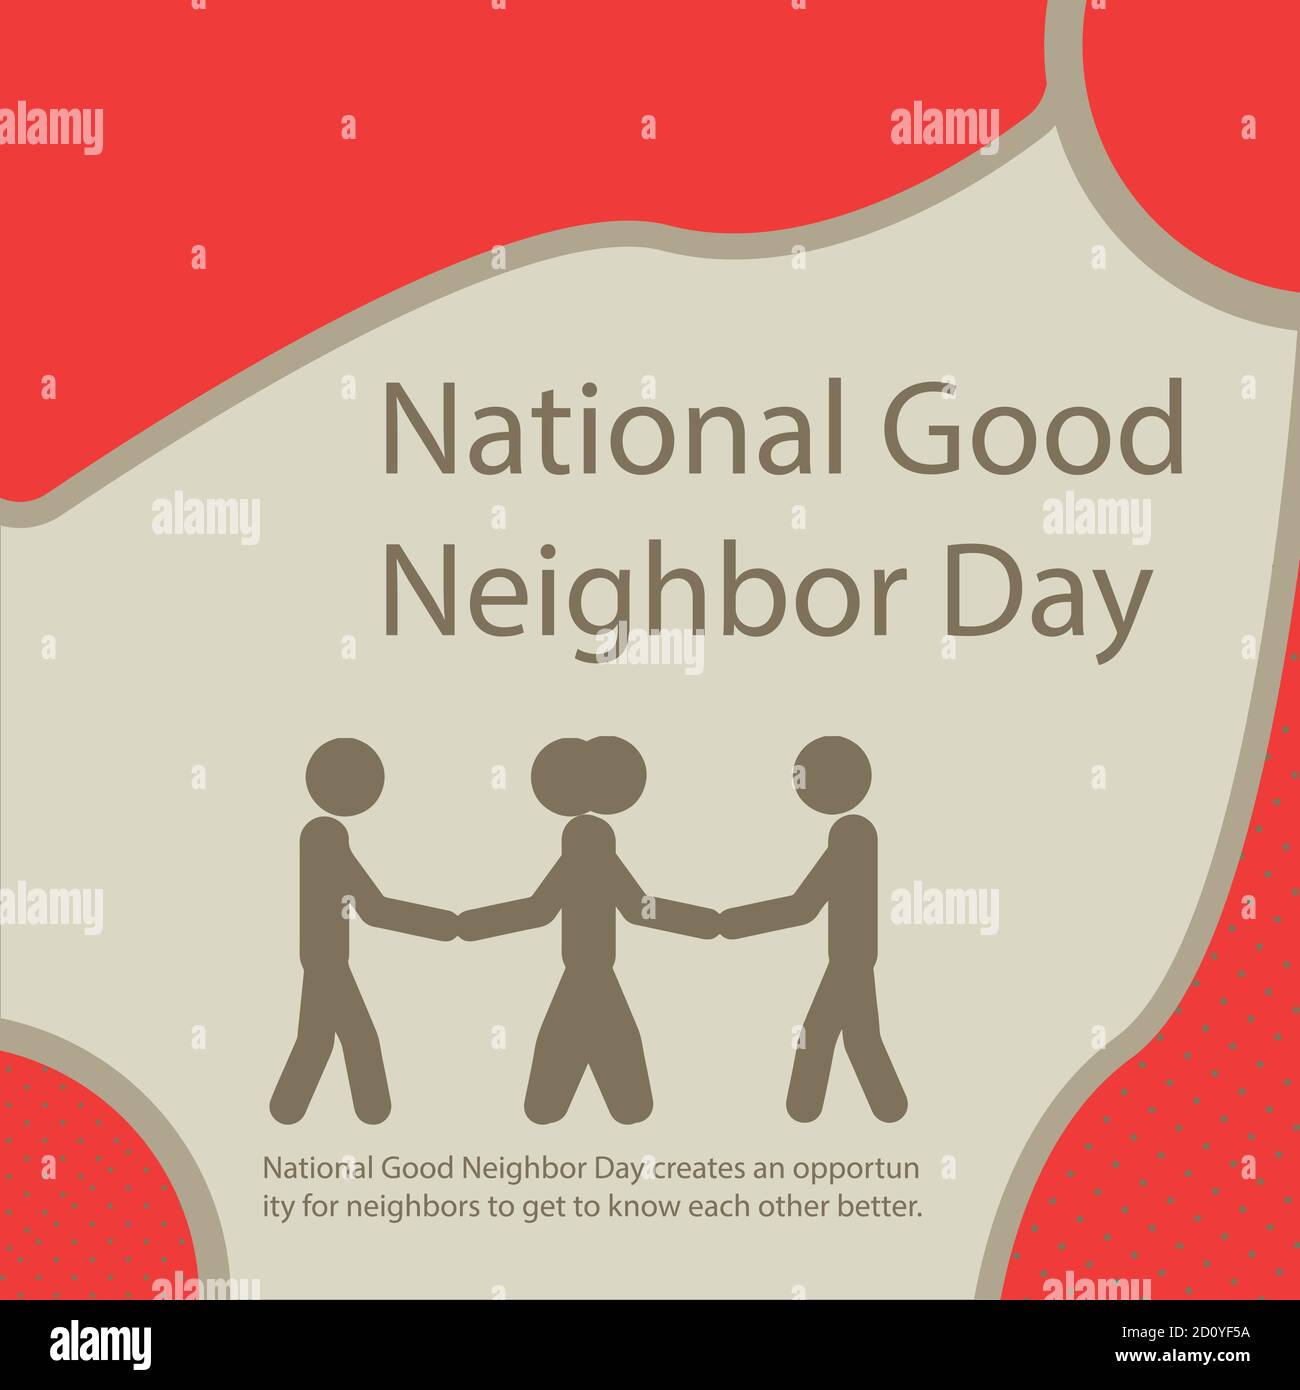 Der National Good Neighbor Day bietet Nachbarn die Möglichkeit, sich besser kennenzulernen. Stock Vektor